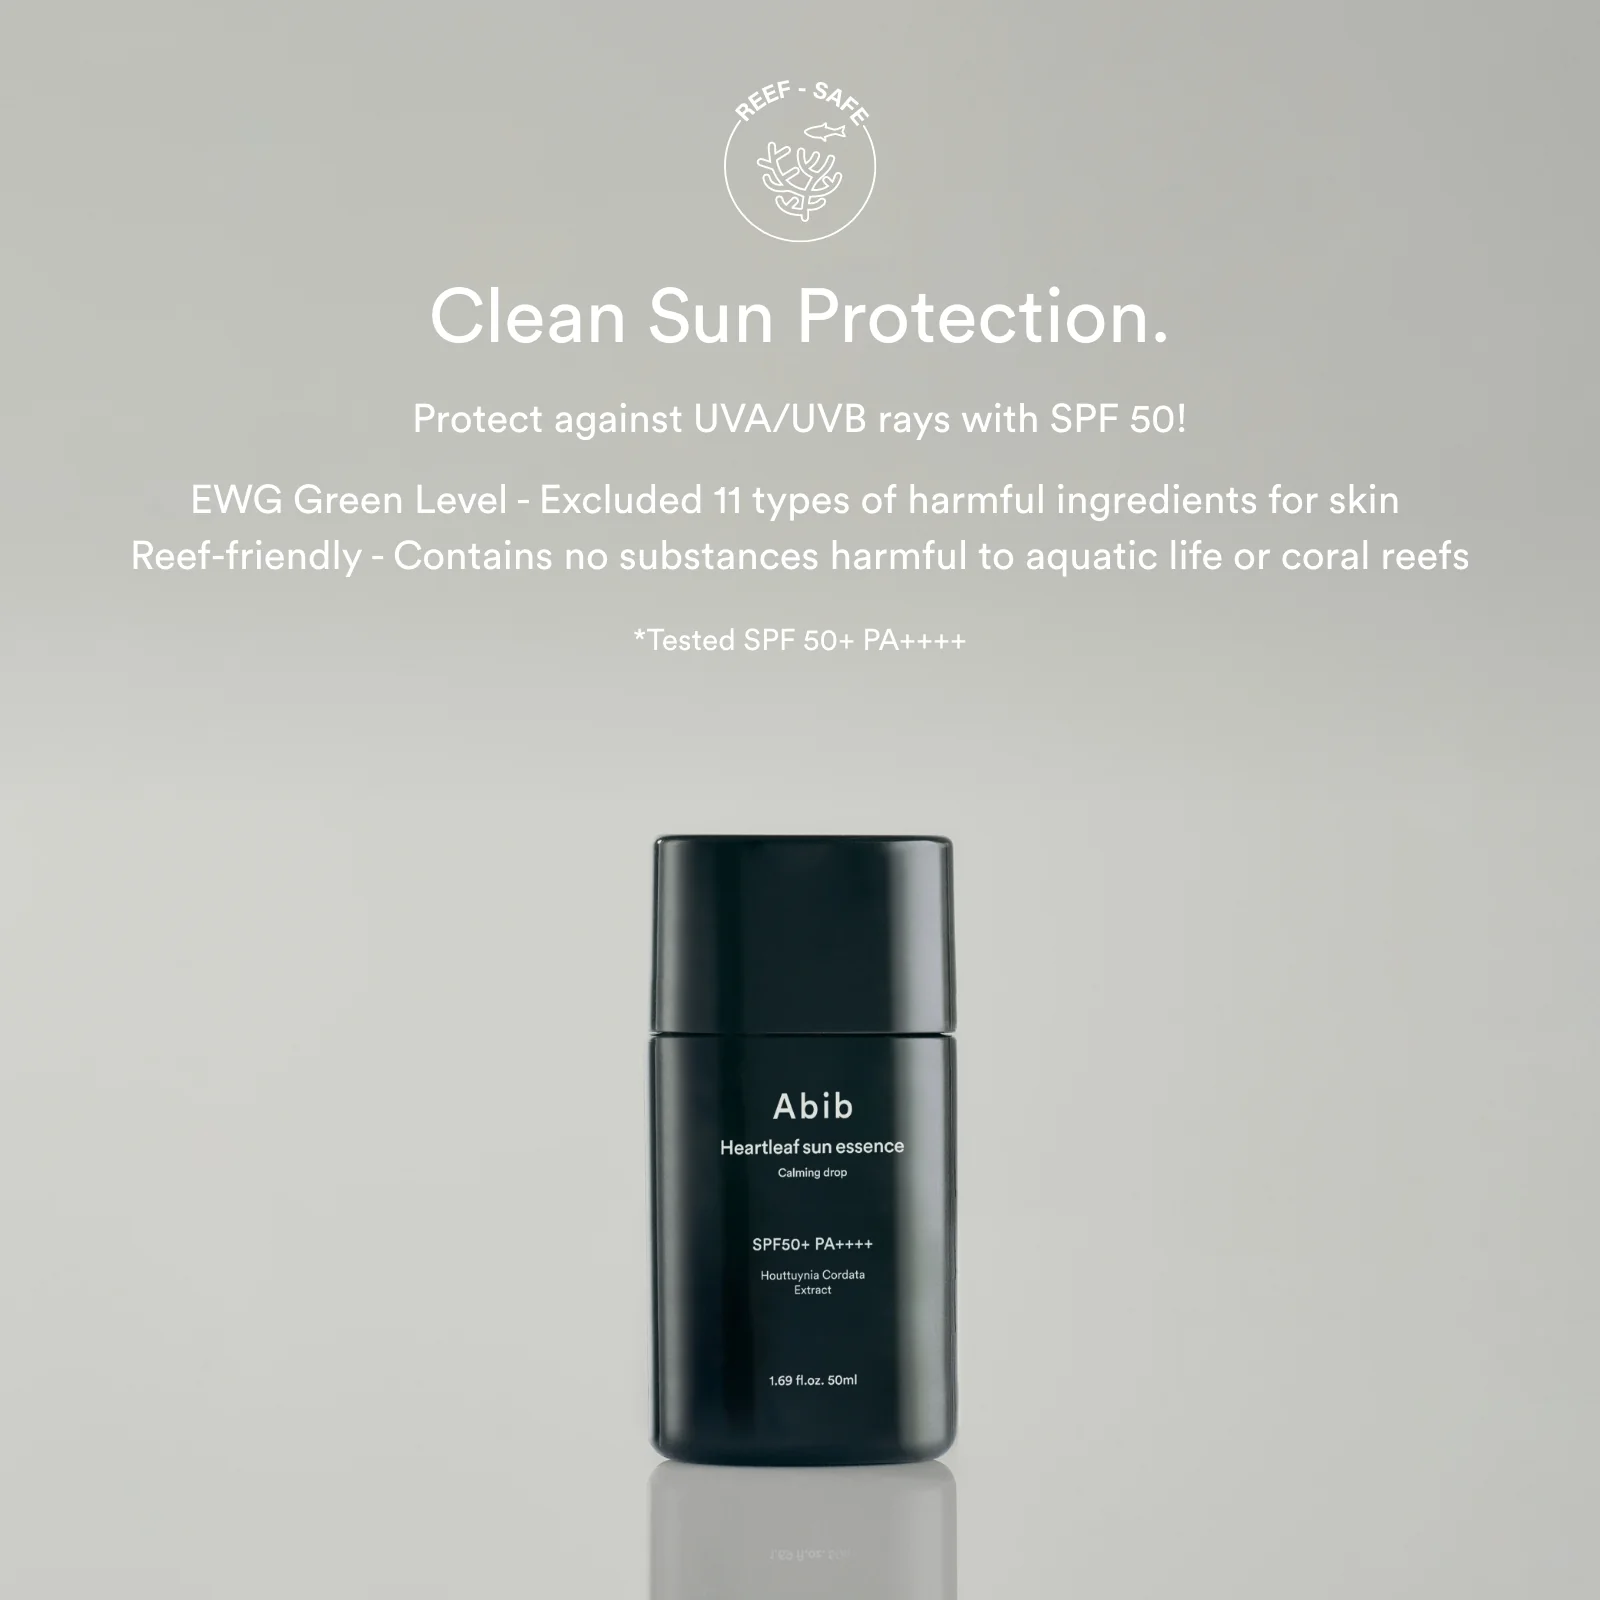 ضد آفتاب کرمی ابیب تسکین دهنده انواع پوست Abib Heartleaf Sun Essence Calming Drop با نهایت محافظت SPF50 ++++PA